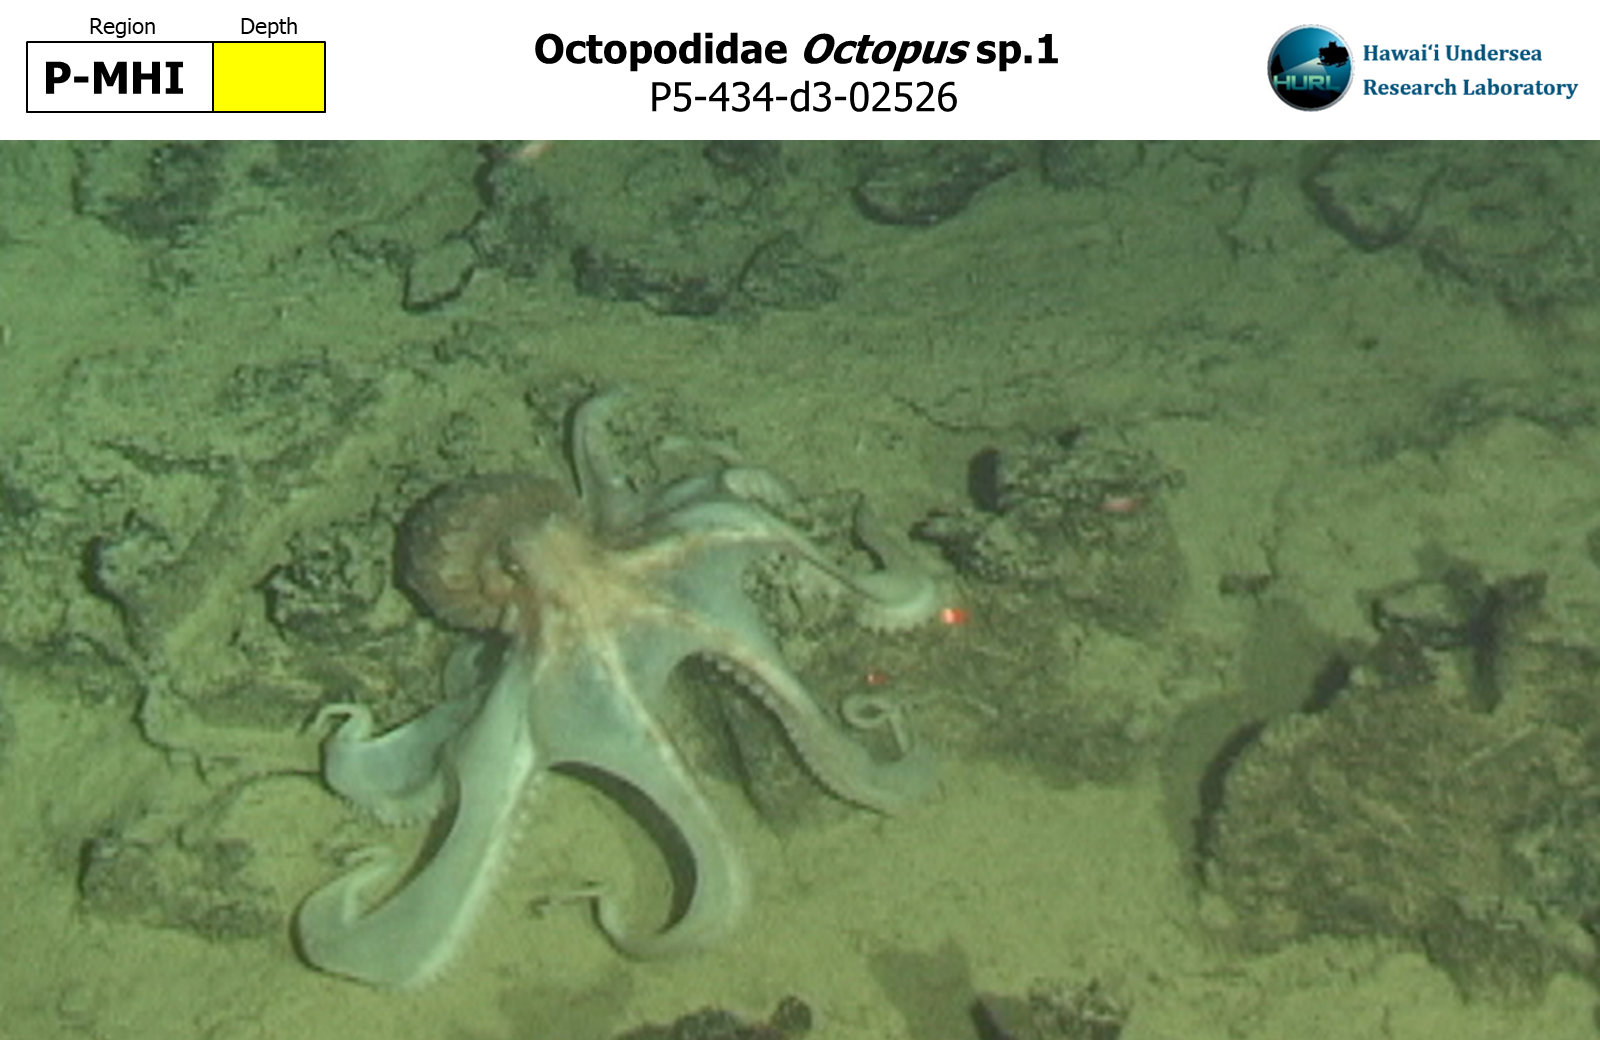 Octopus sp.1